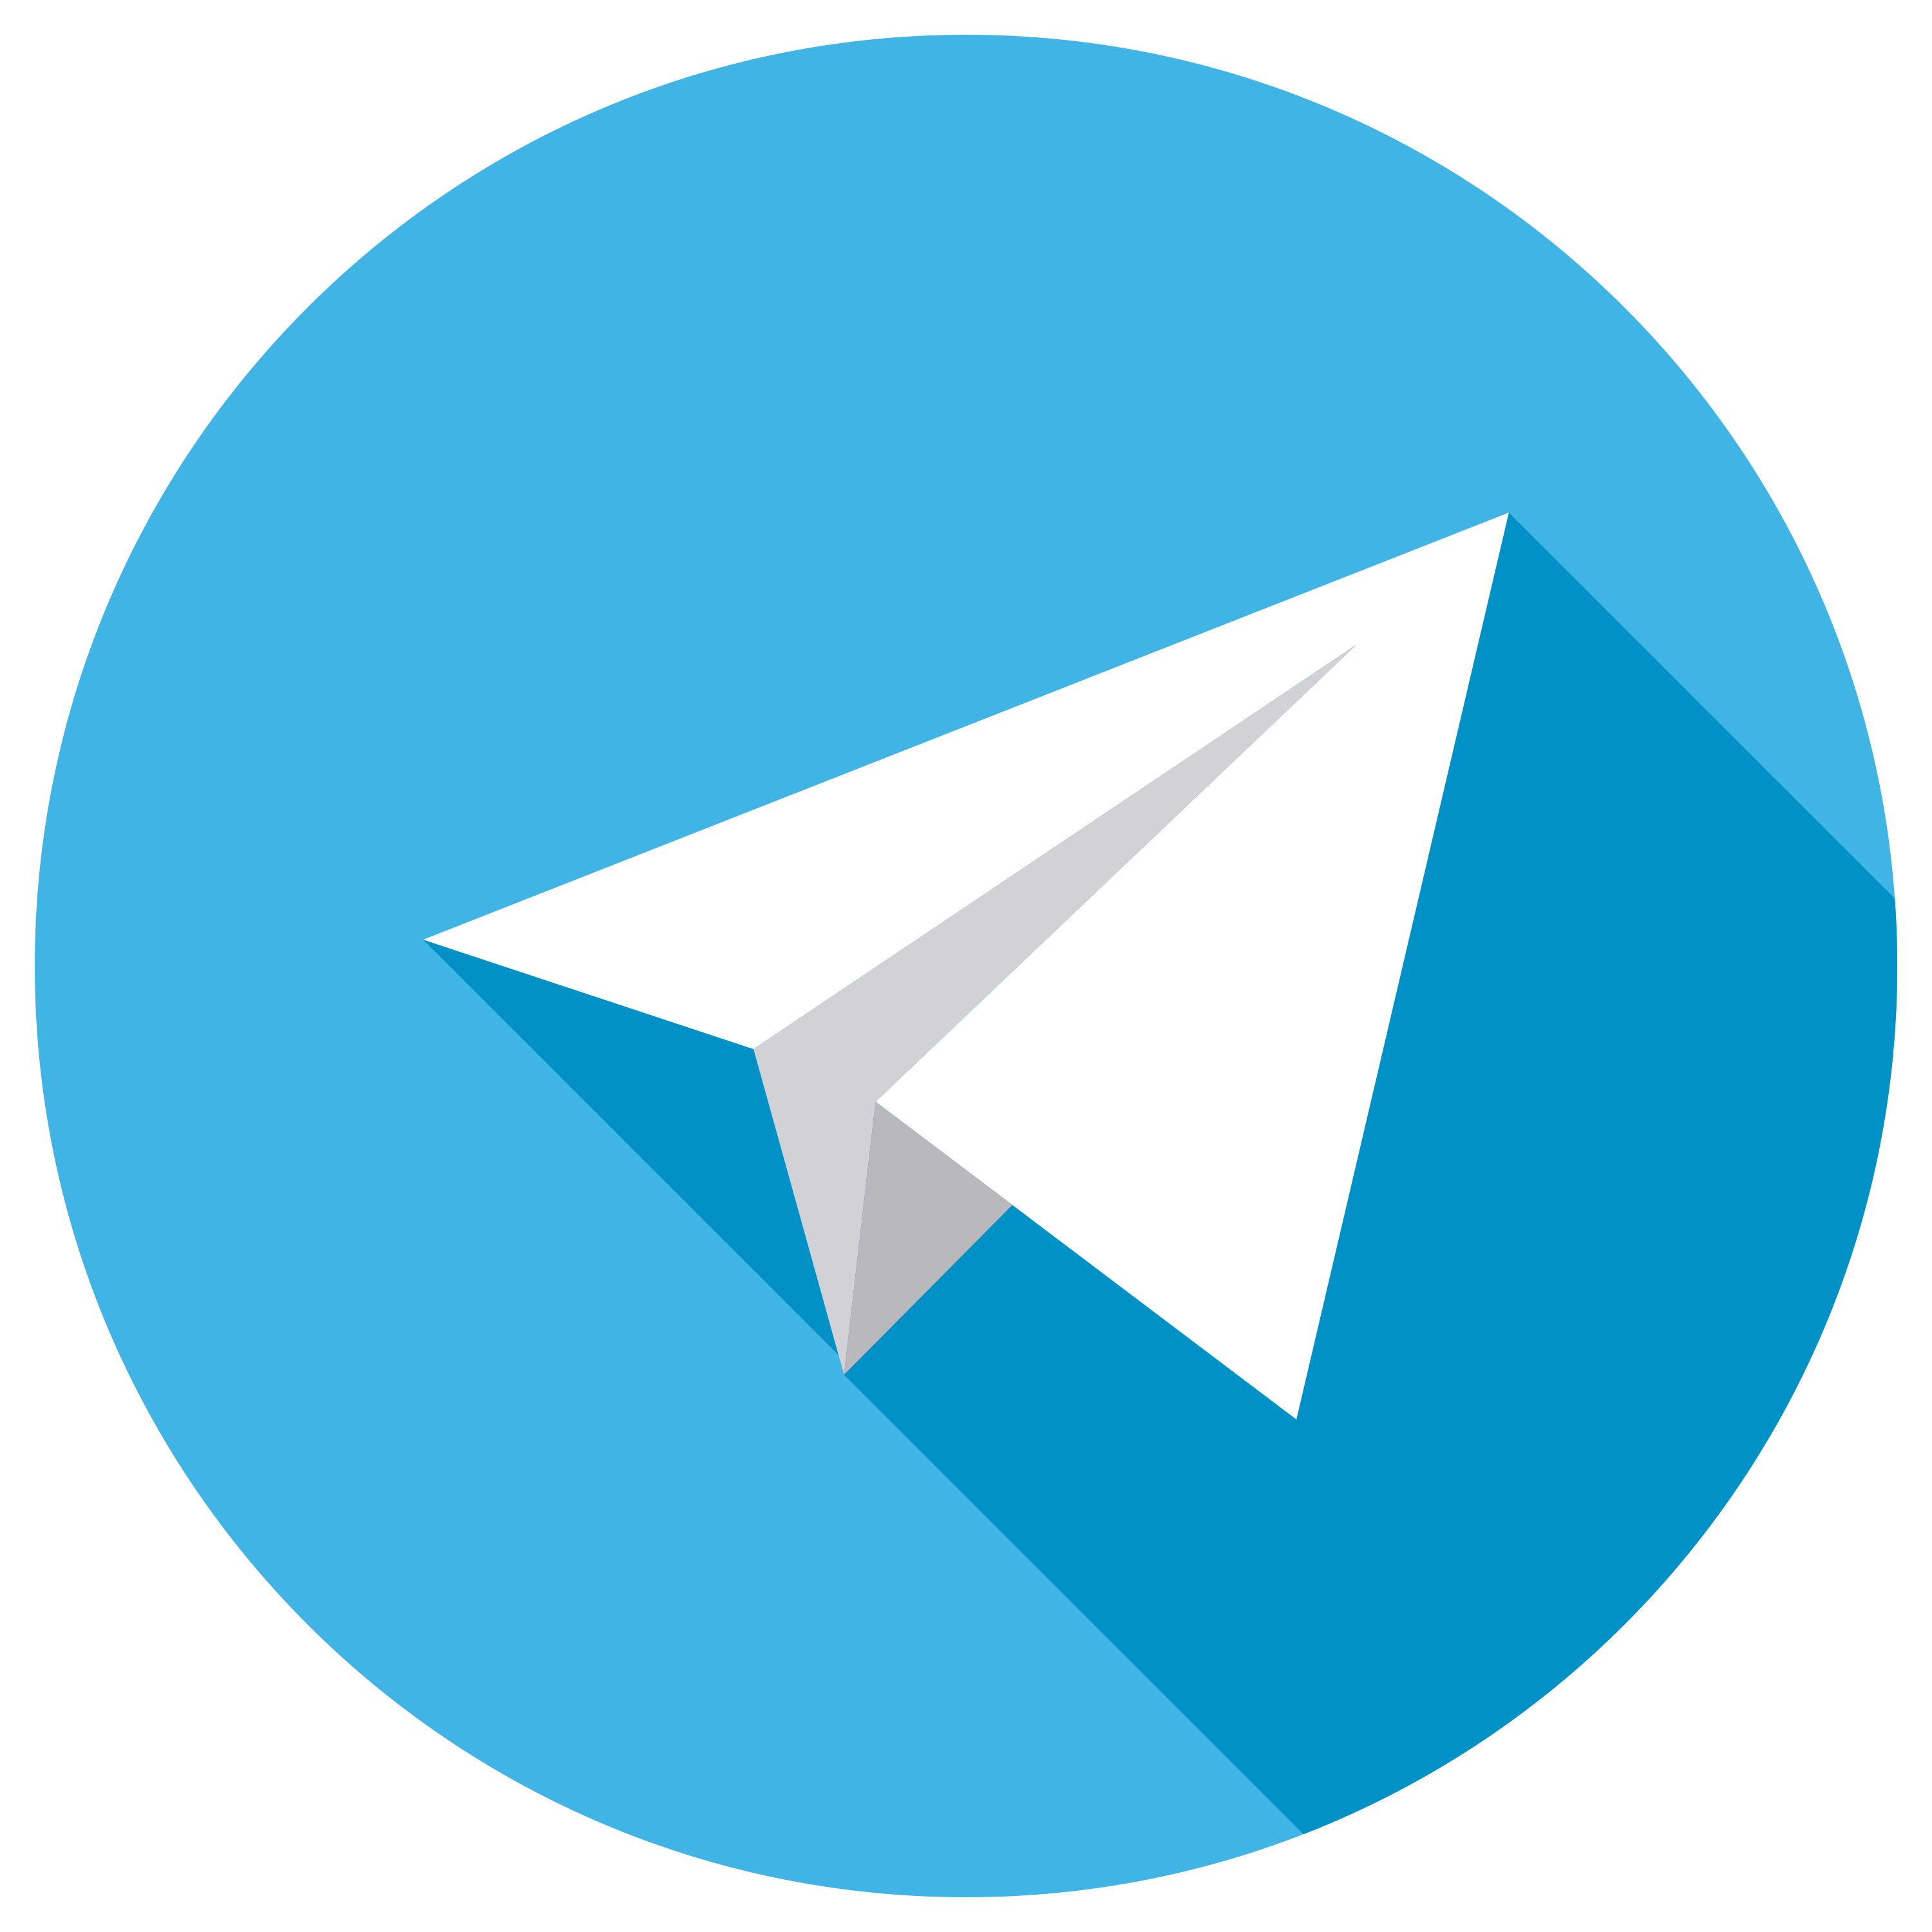 لوگو تلگرام png - انجمن نورگرام | انجمن نورگرام